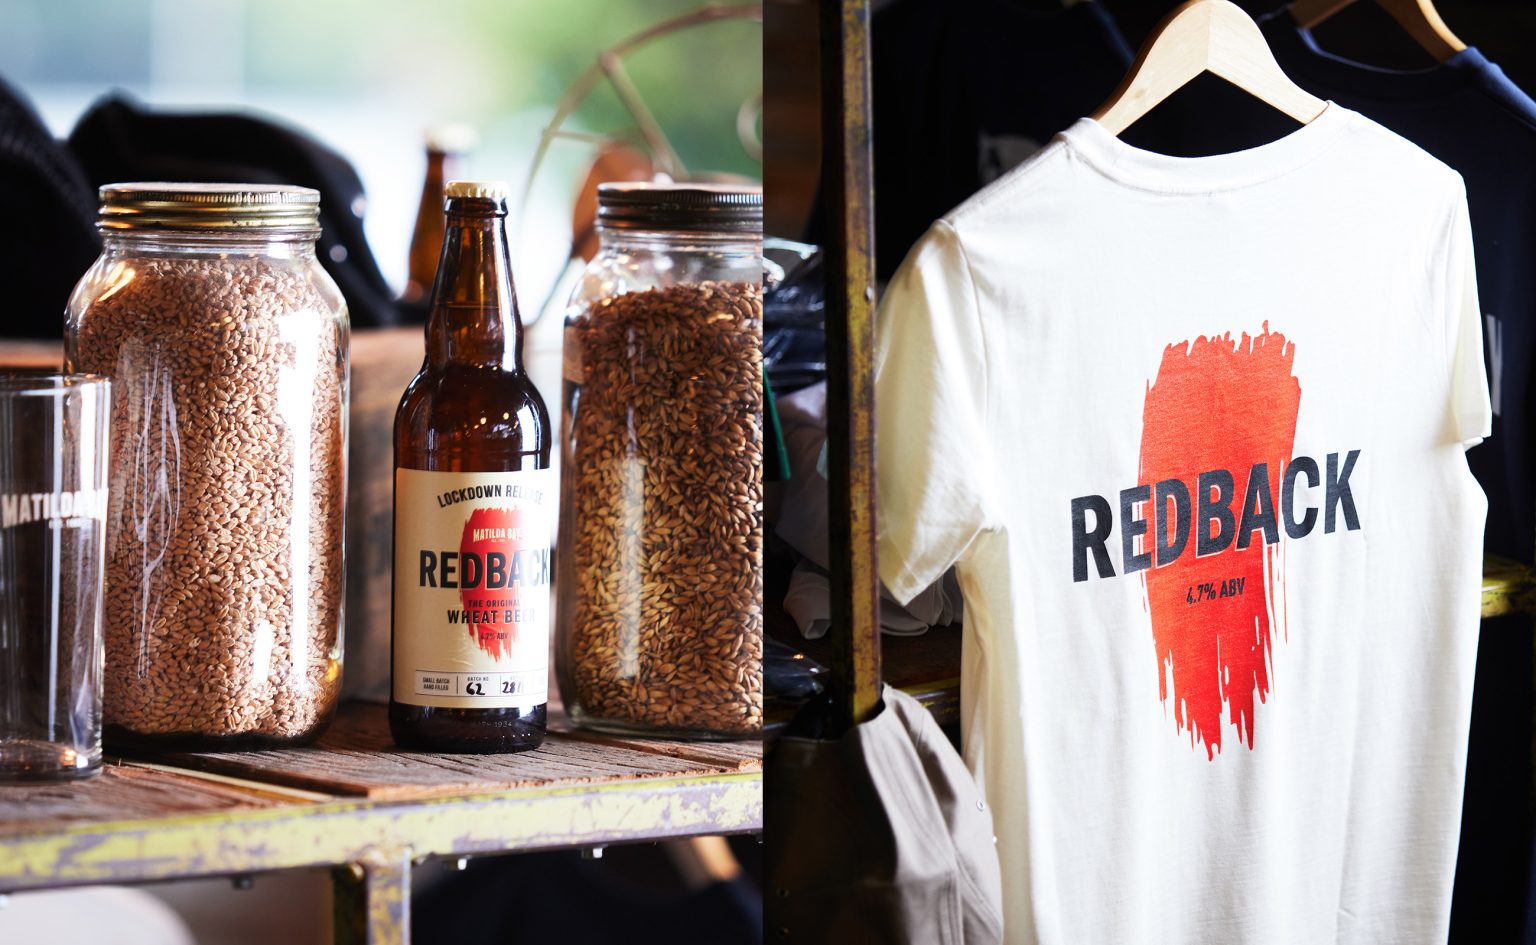 Matilda Bay Redback beer and tshirt